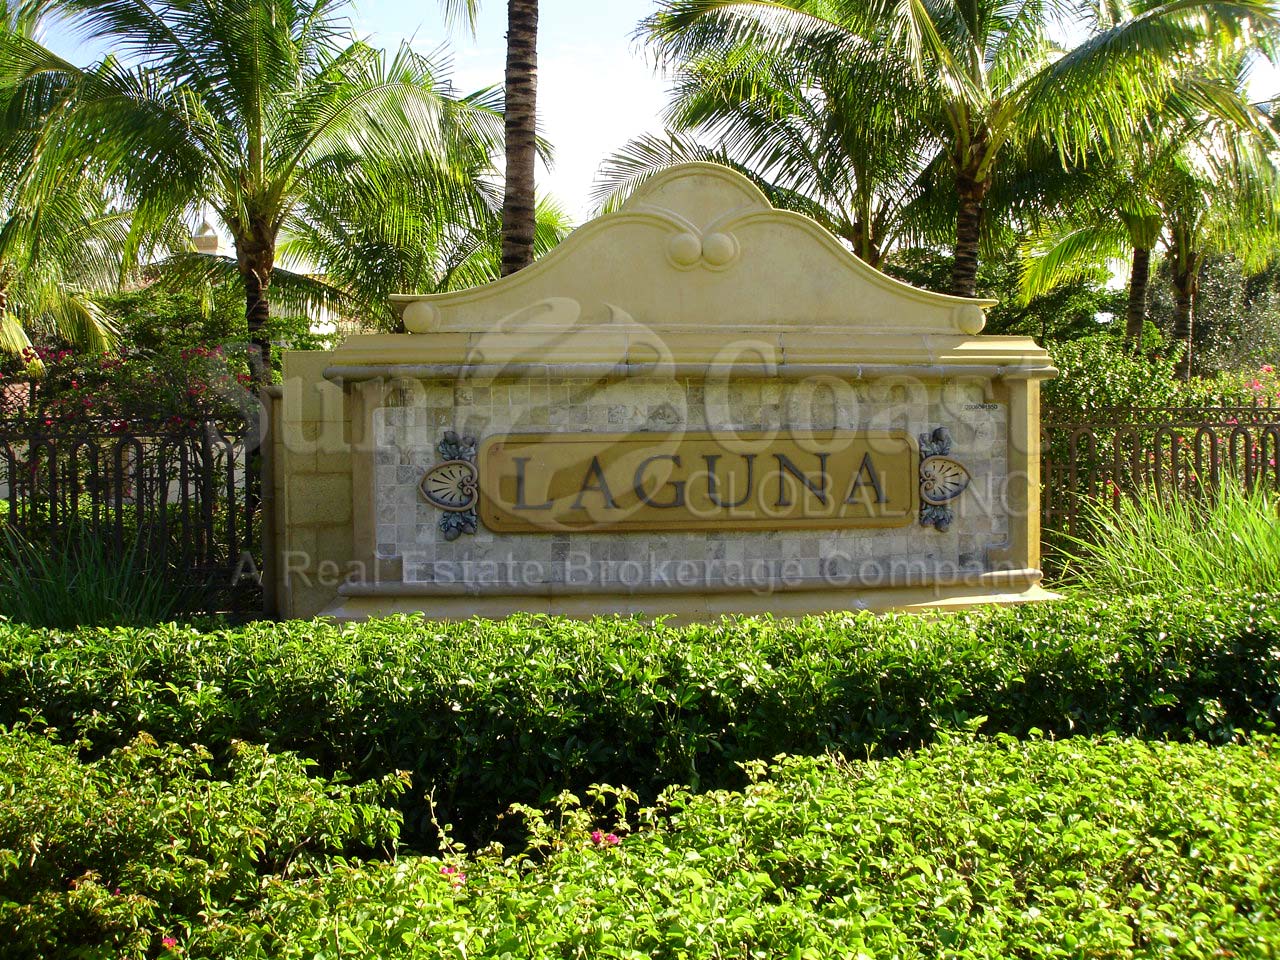 Laguna Signage